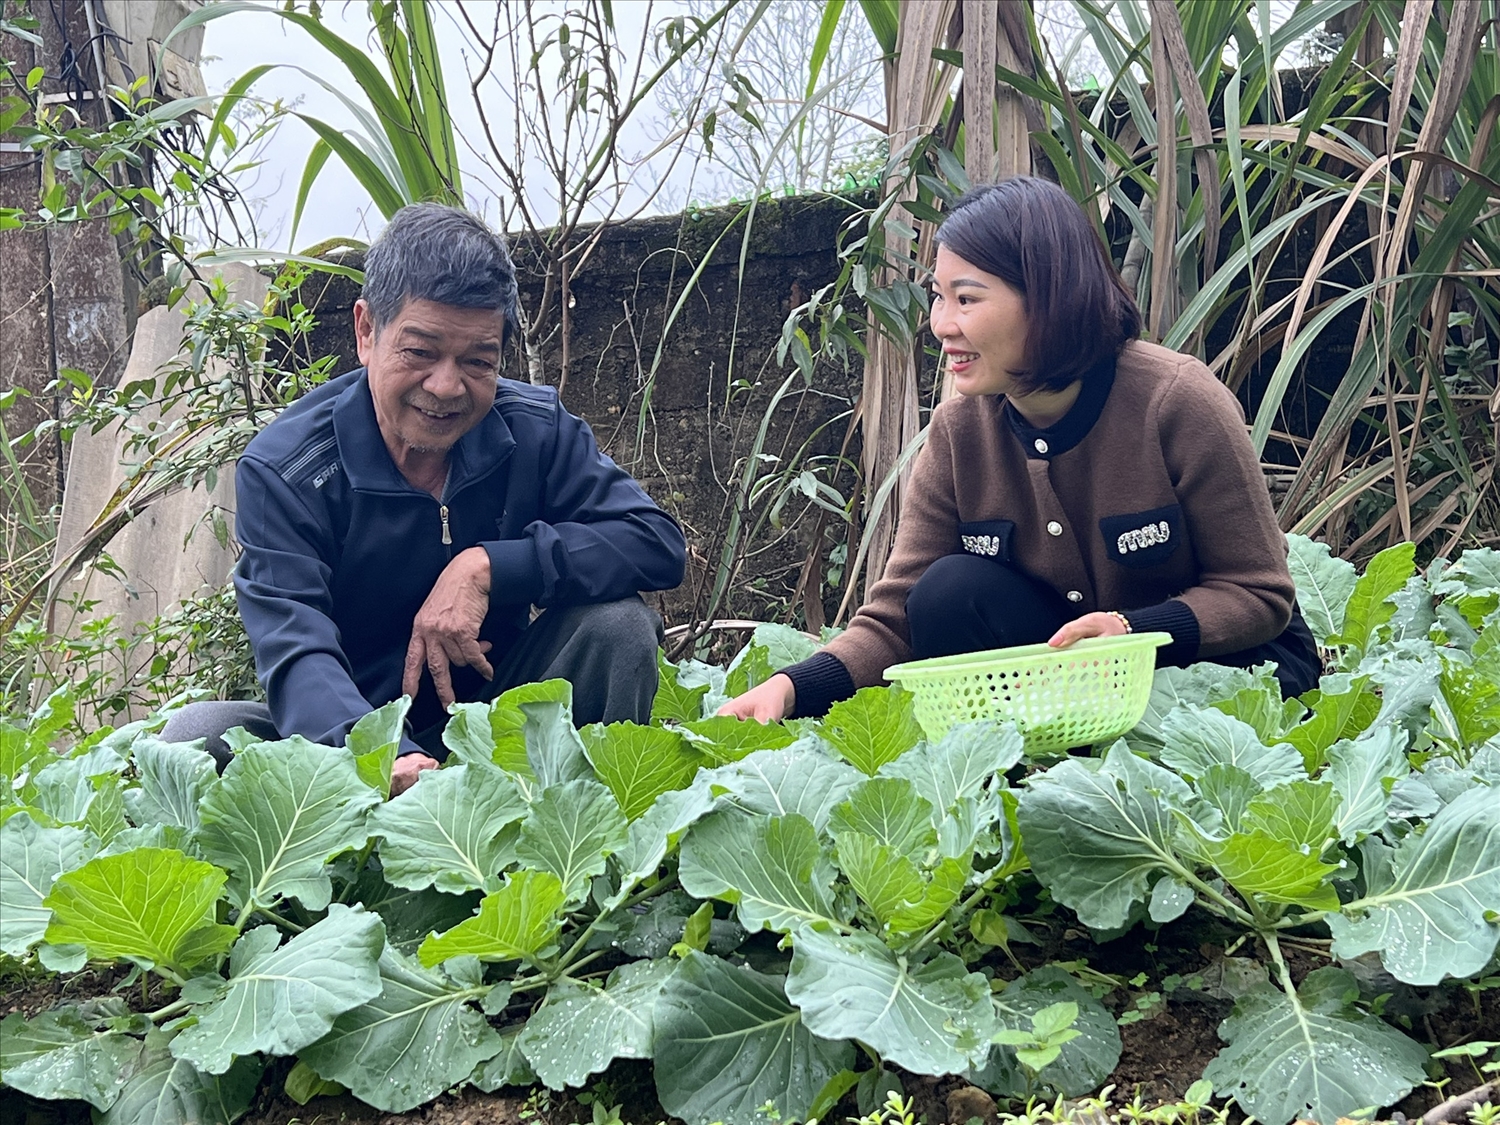 Ông Trần Văn Thiên, thôn Tân Hùng, xã Hùng Đức, huyện Hàm Yên tăng gia sản xuất, trồng rau, nuôi gà tạo thu nhập để có động lực tự nguyện viết đơn xin thoát nghèo vào năm 2023.